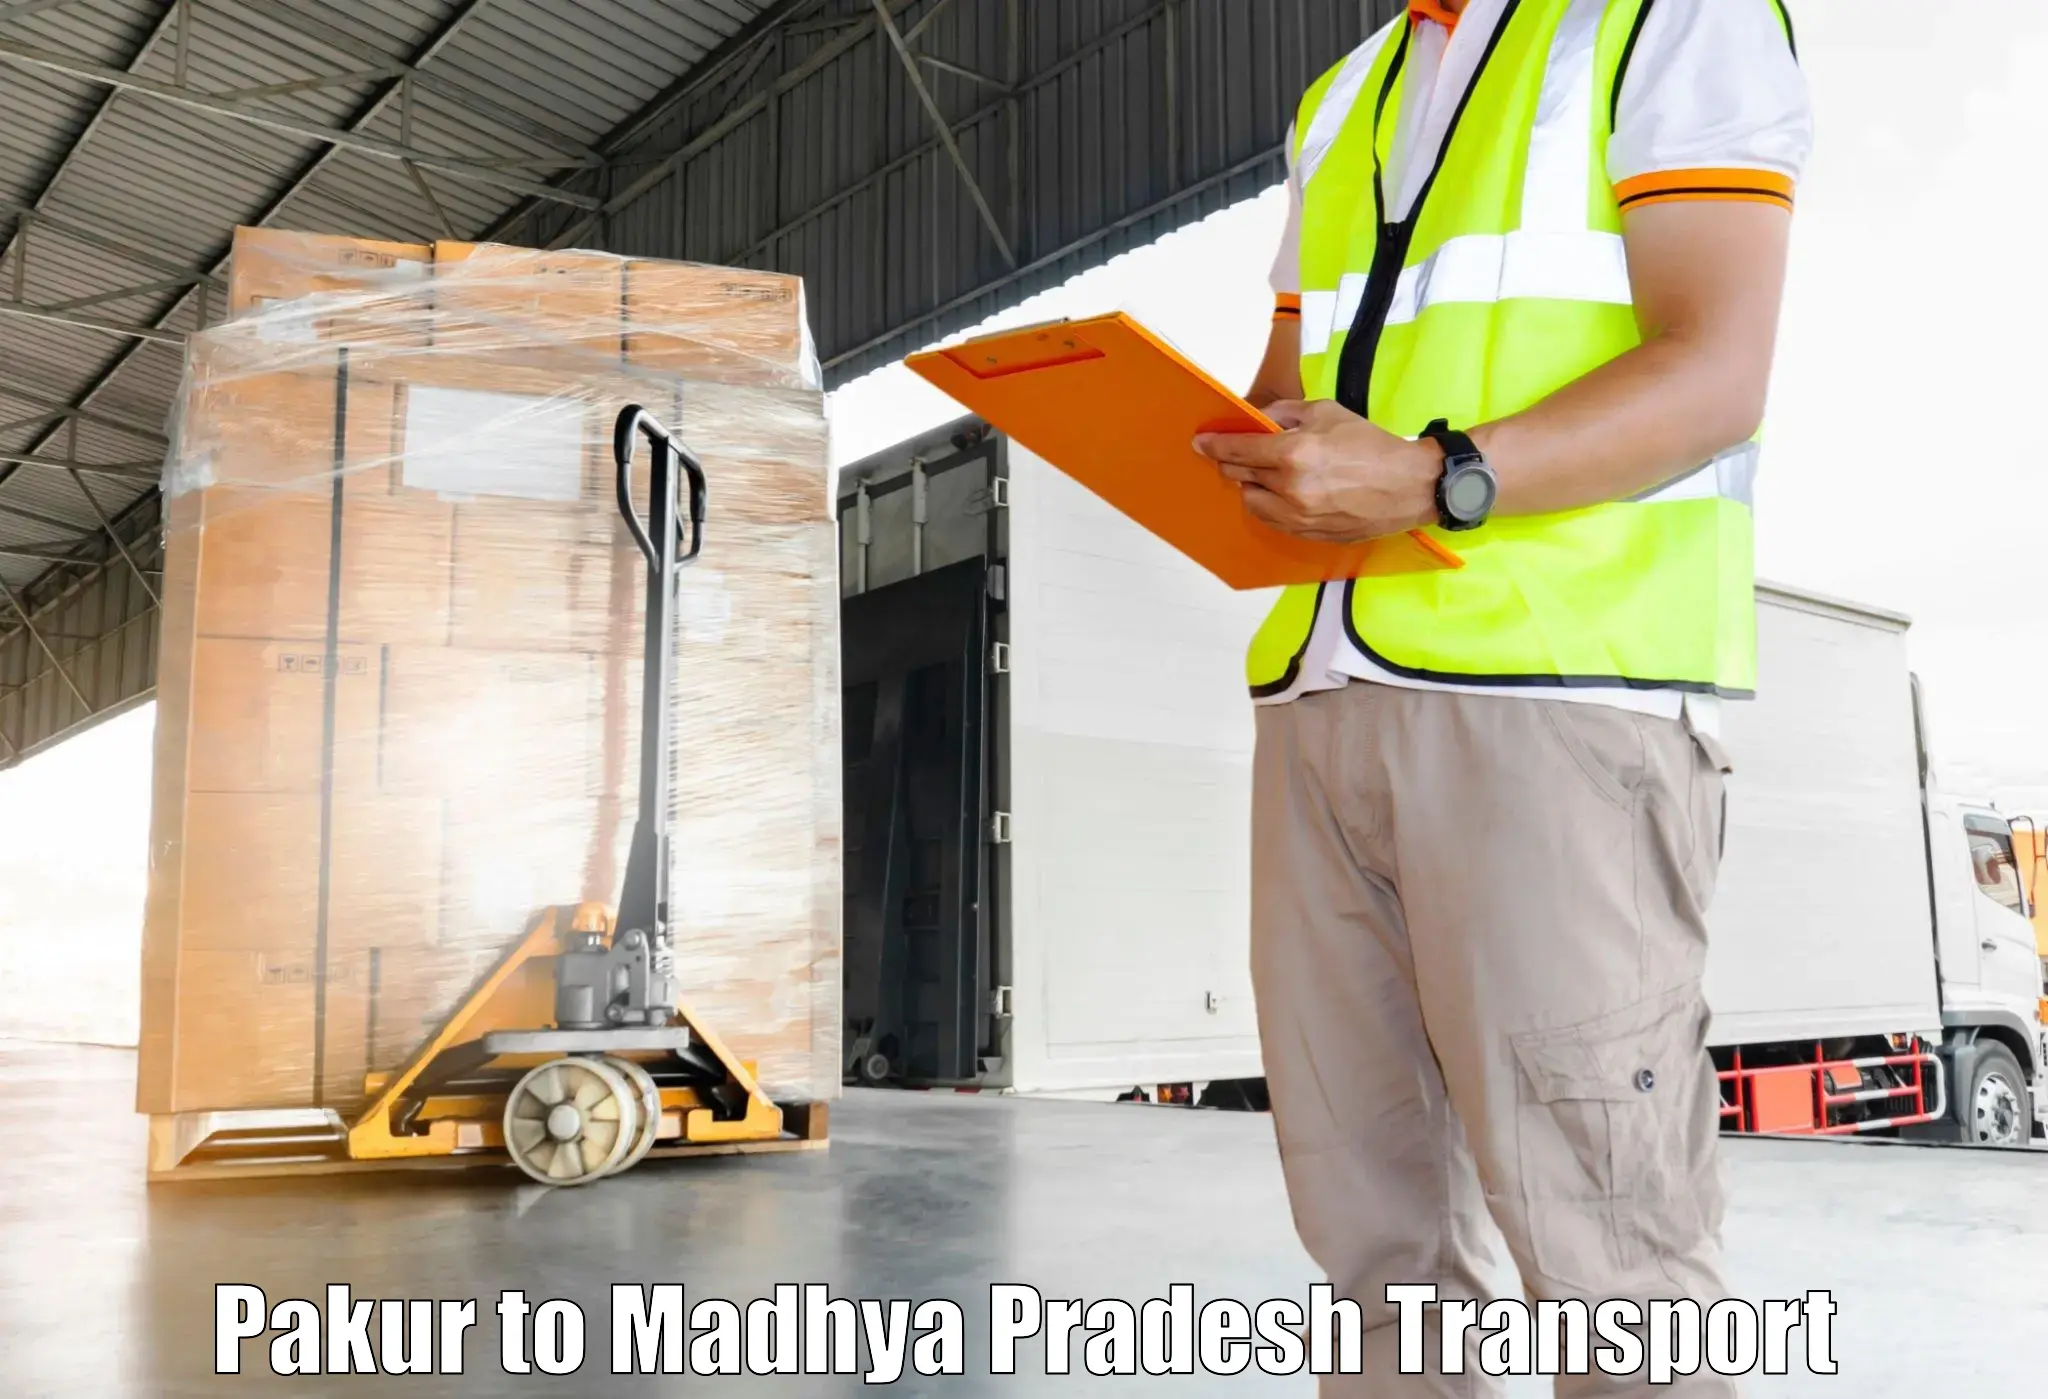 Furniture transport service Pakur to Amarpatan